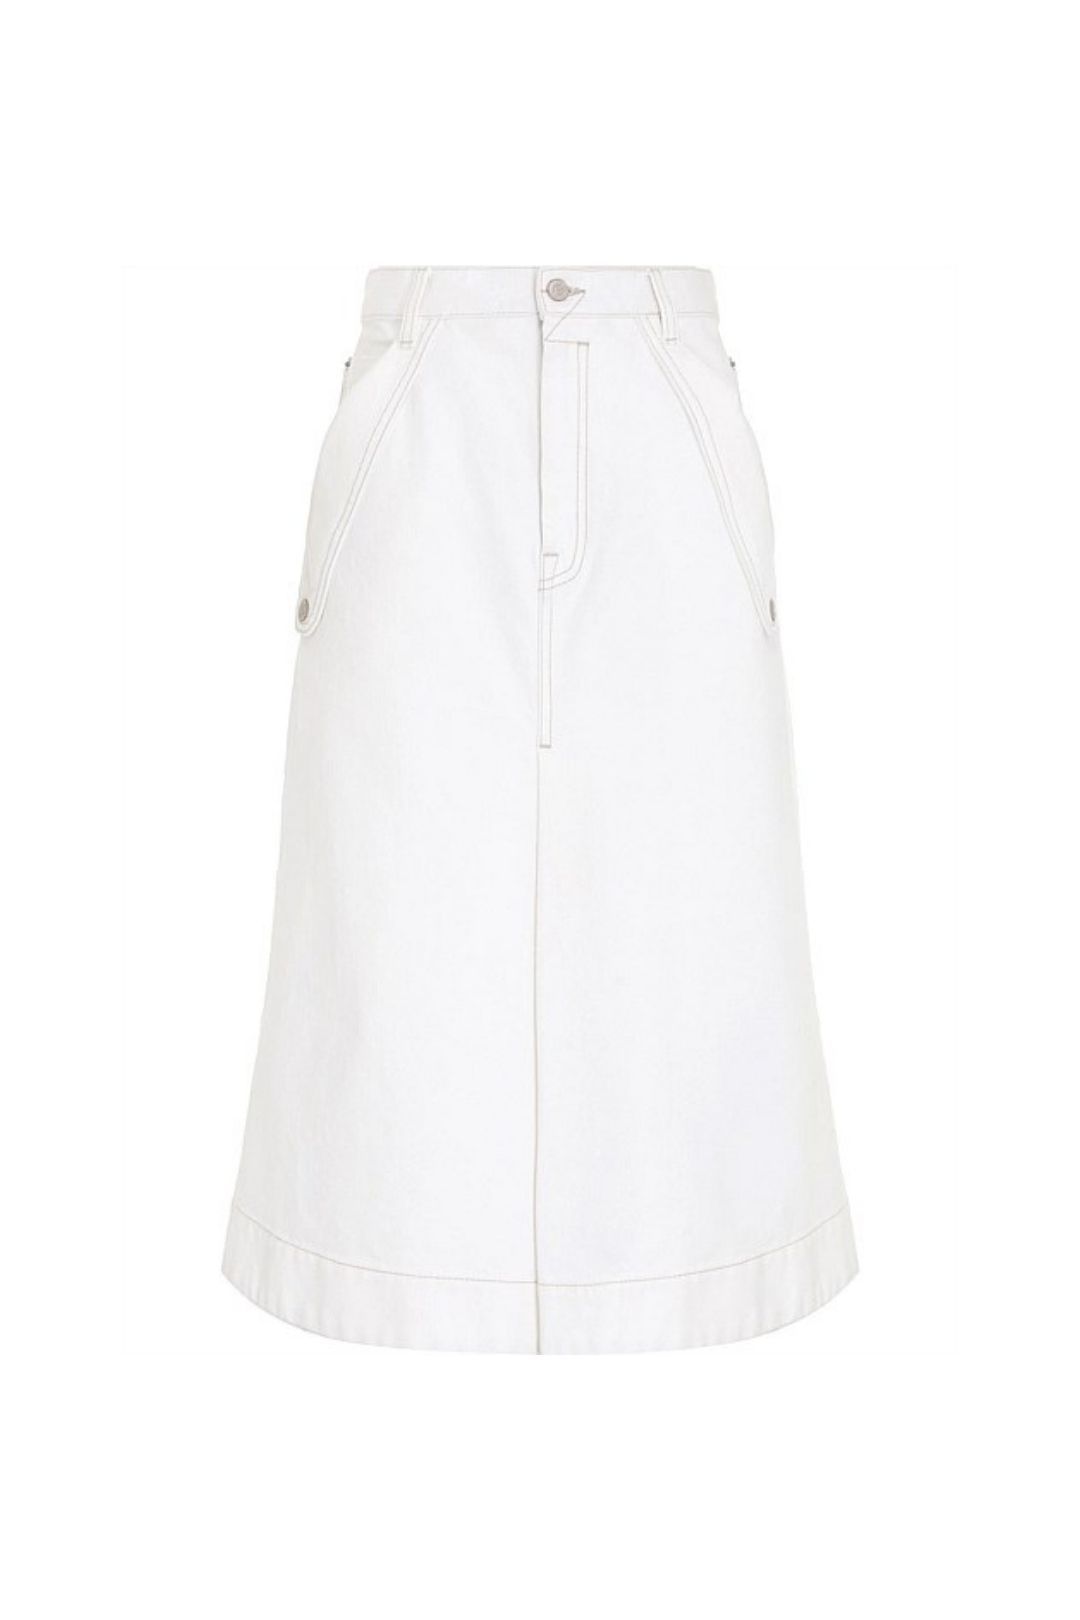 Zimmermann Pocket Skirt White